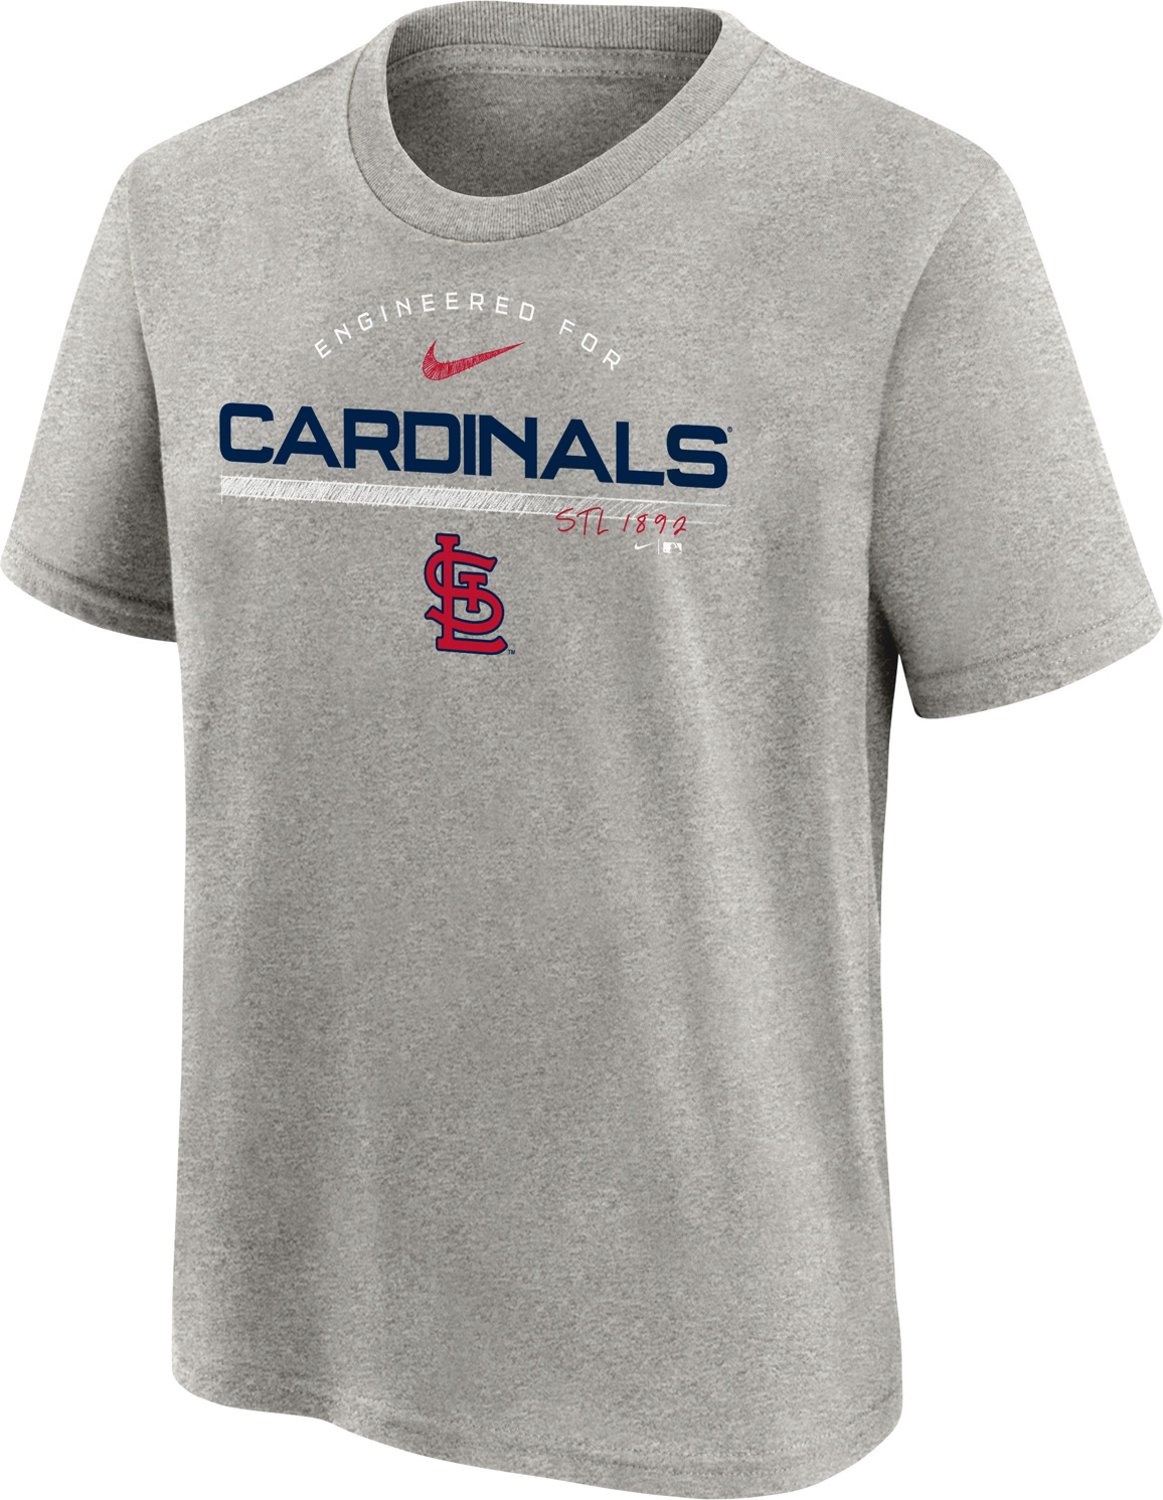 Nike Kids' St. Louis Cardinals Team Engine T-Shirt